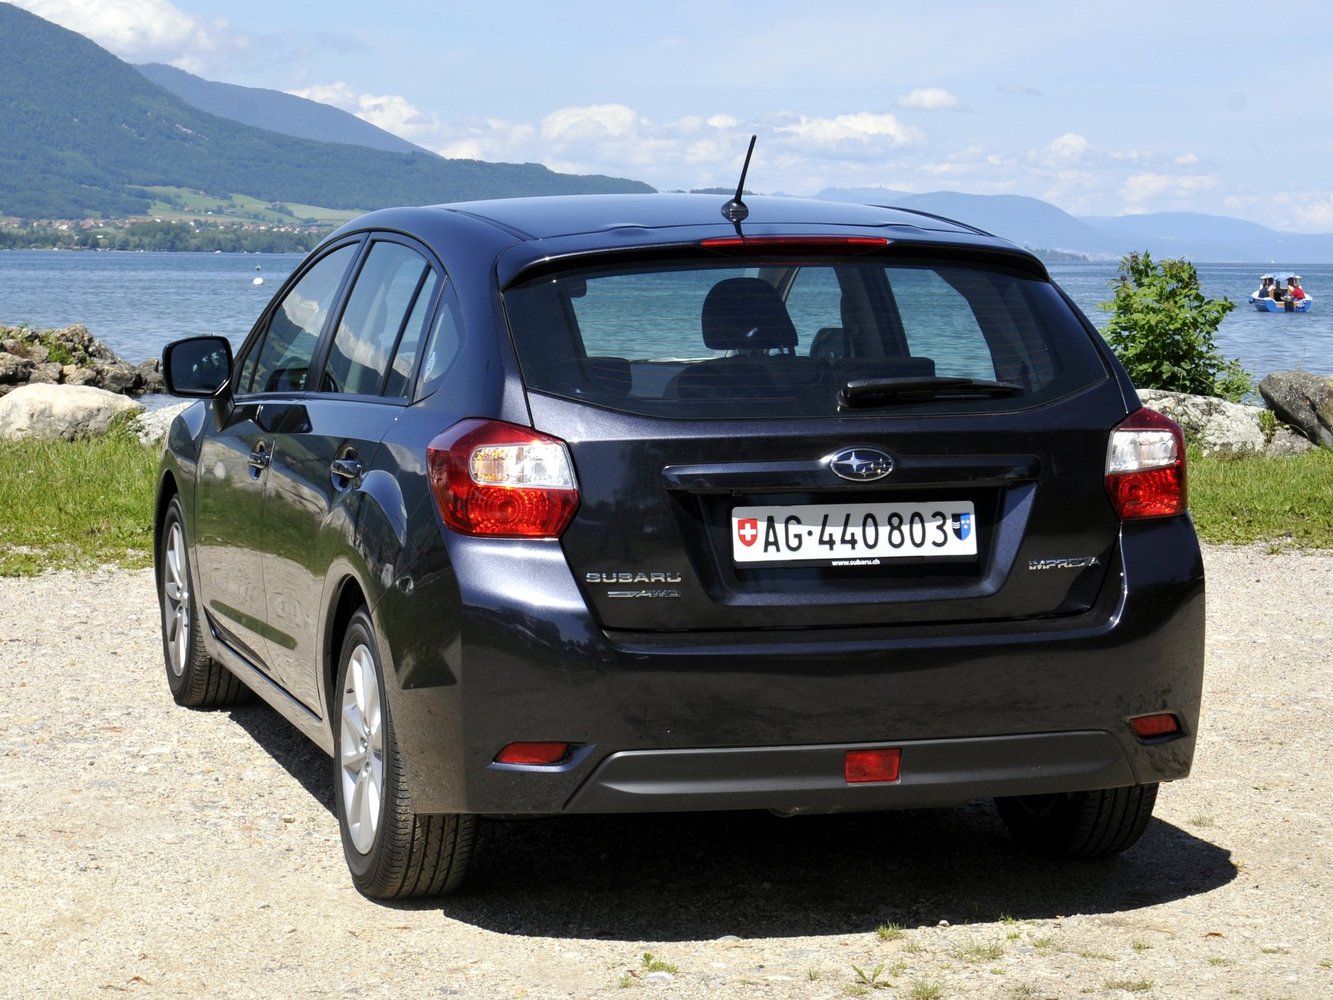 хэтчбек 5 дв. Subaru Impreza 2012 - 2014г выпуска модификация 1.6 CVT (114 л.с.)